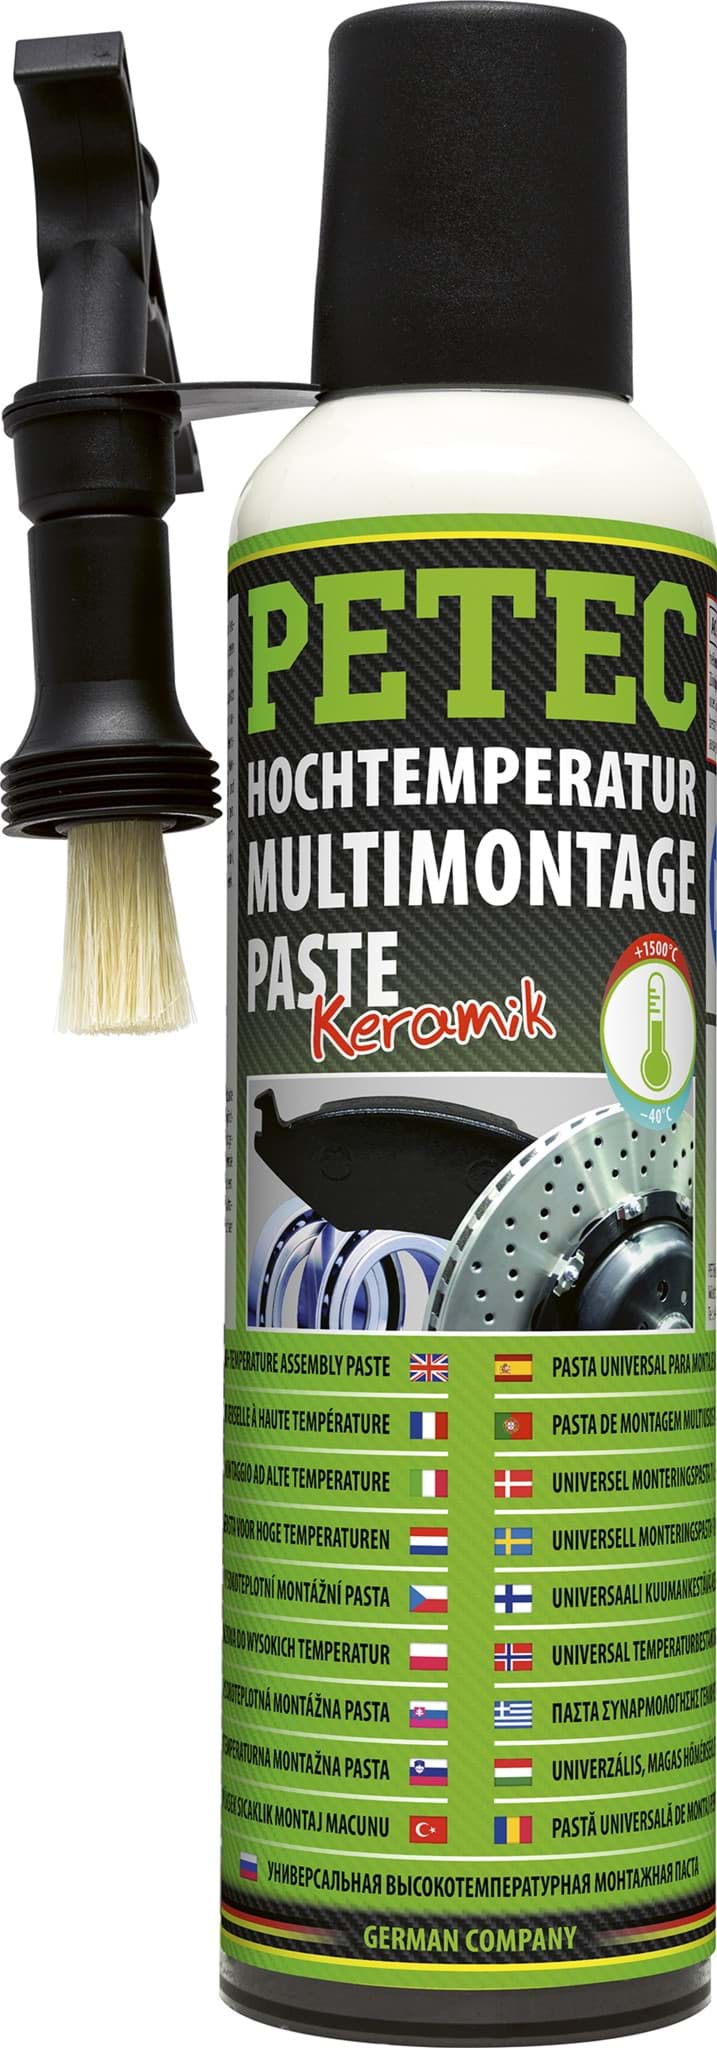 Afbeelding van Petec Hochtemperatur Montagepaste Keramikpaste bis 1500°C